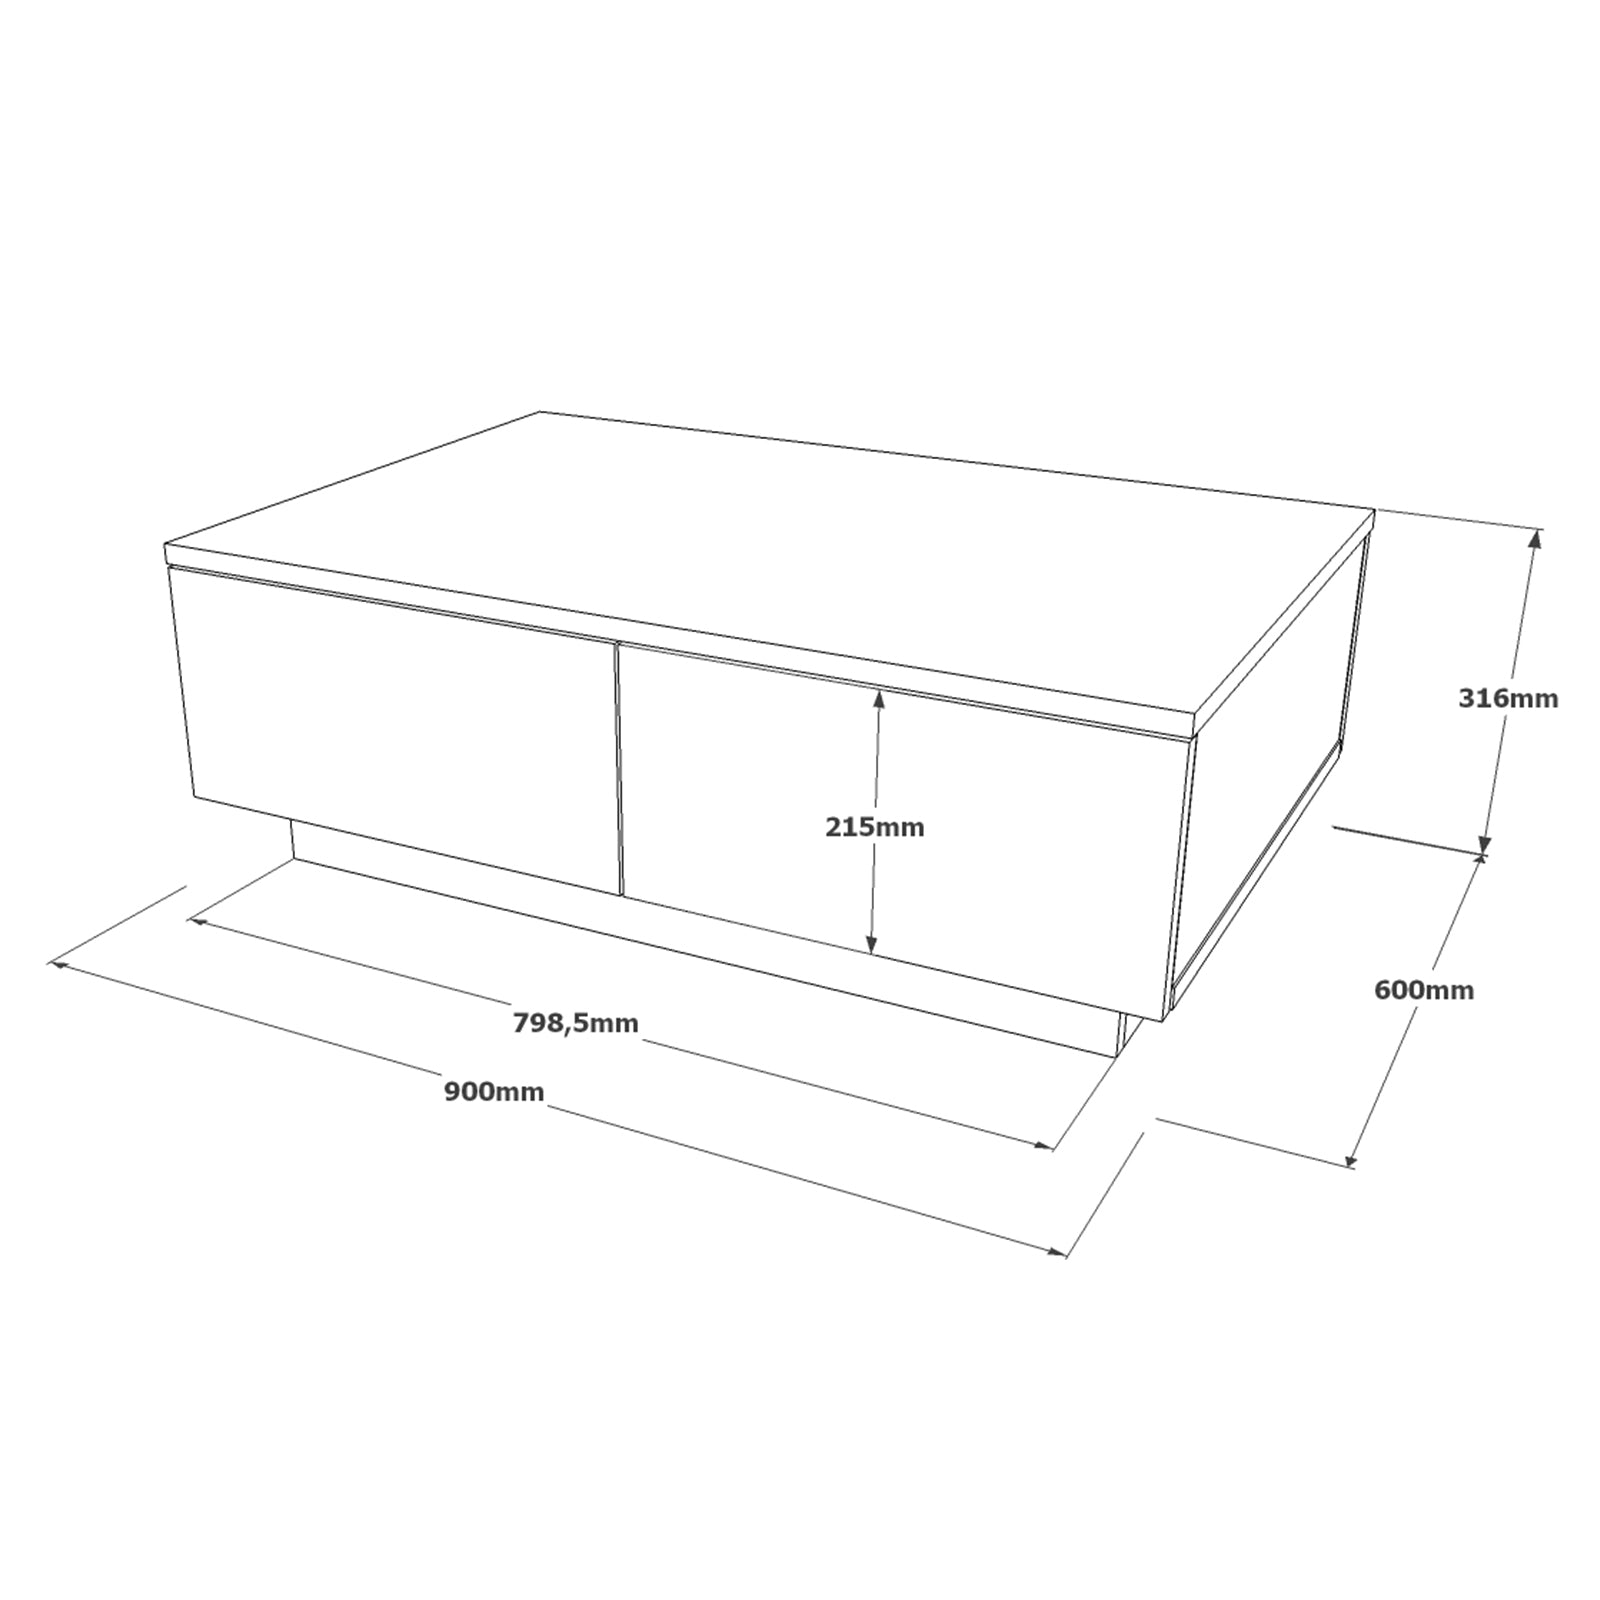 bois et blanc-Table basse ELYSEO avec rangements pratiques et surface spacieuse pour les moments conviviaux